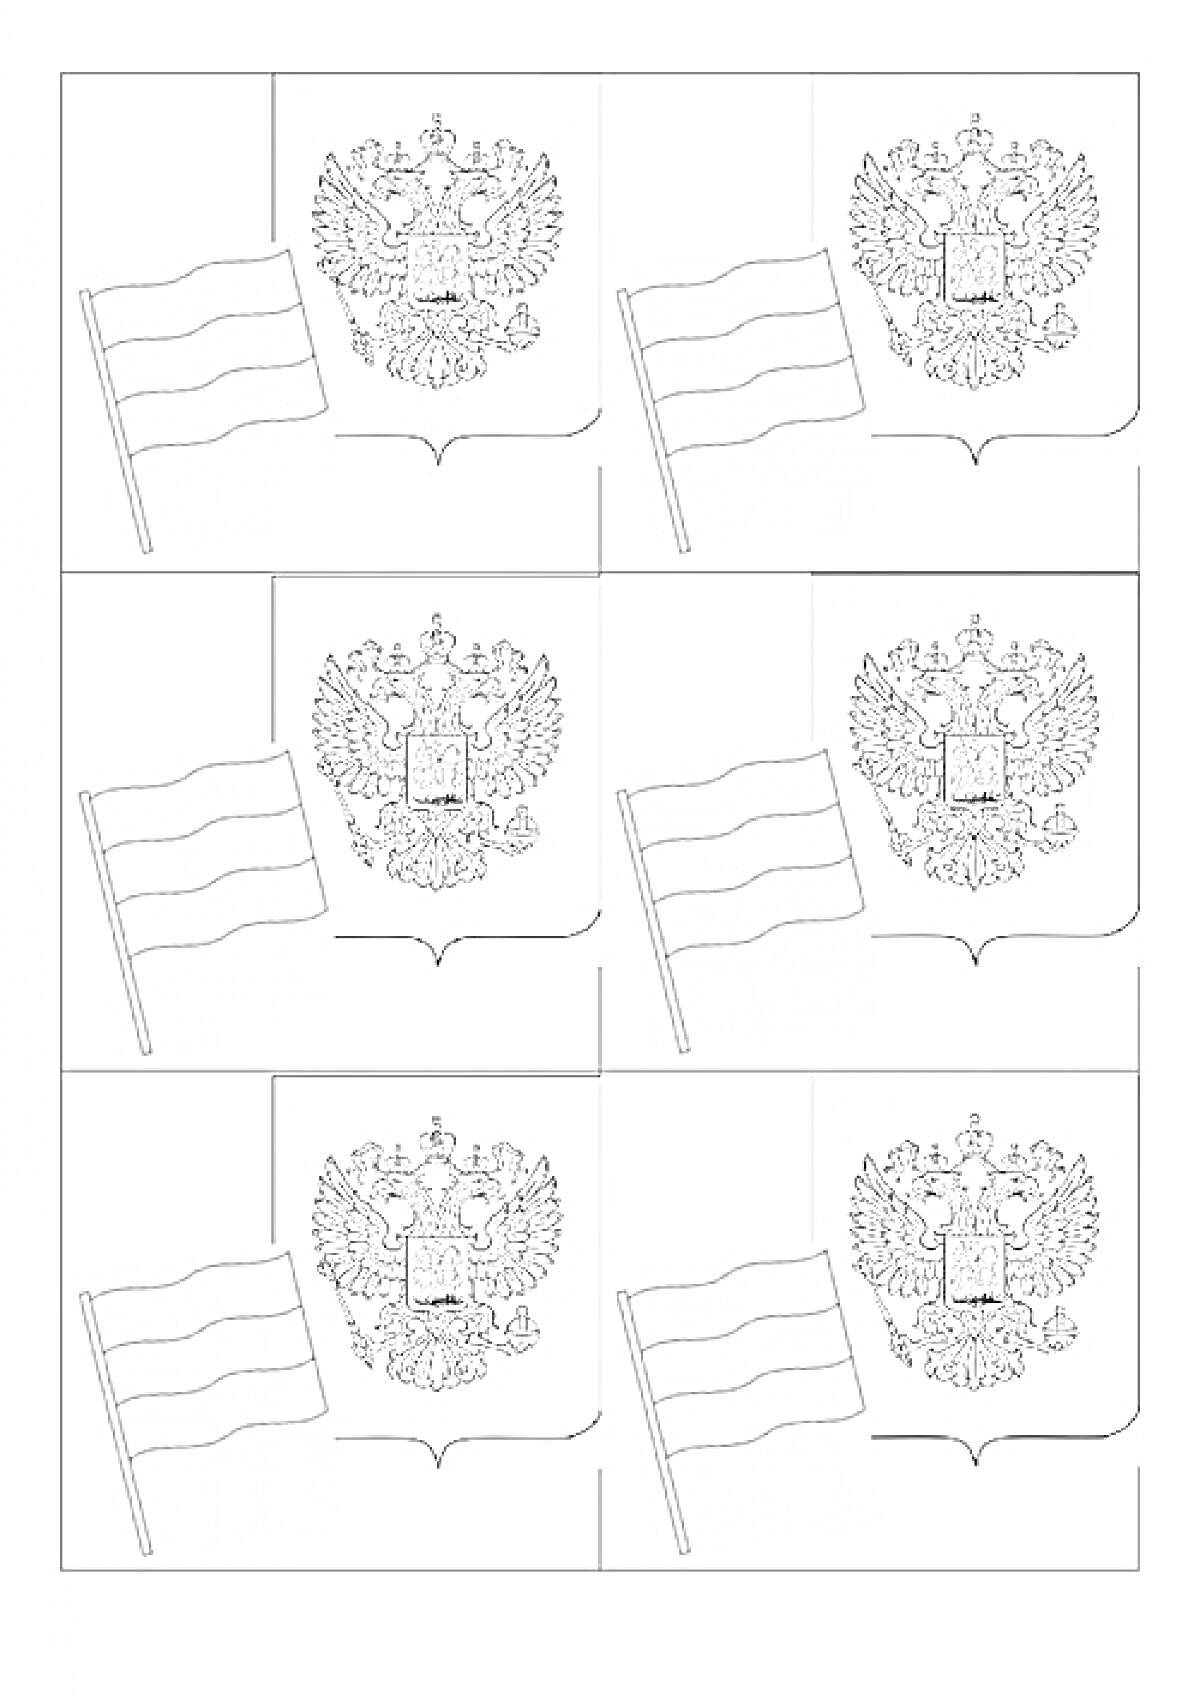 Герб и флаг России. Шесть картинок с изображением герба и флага России.